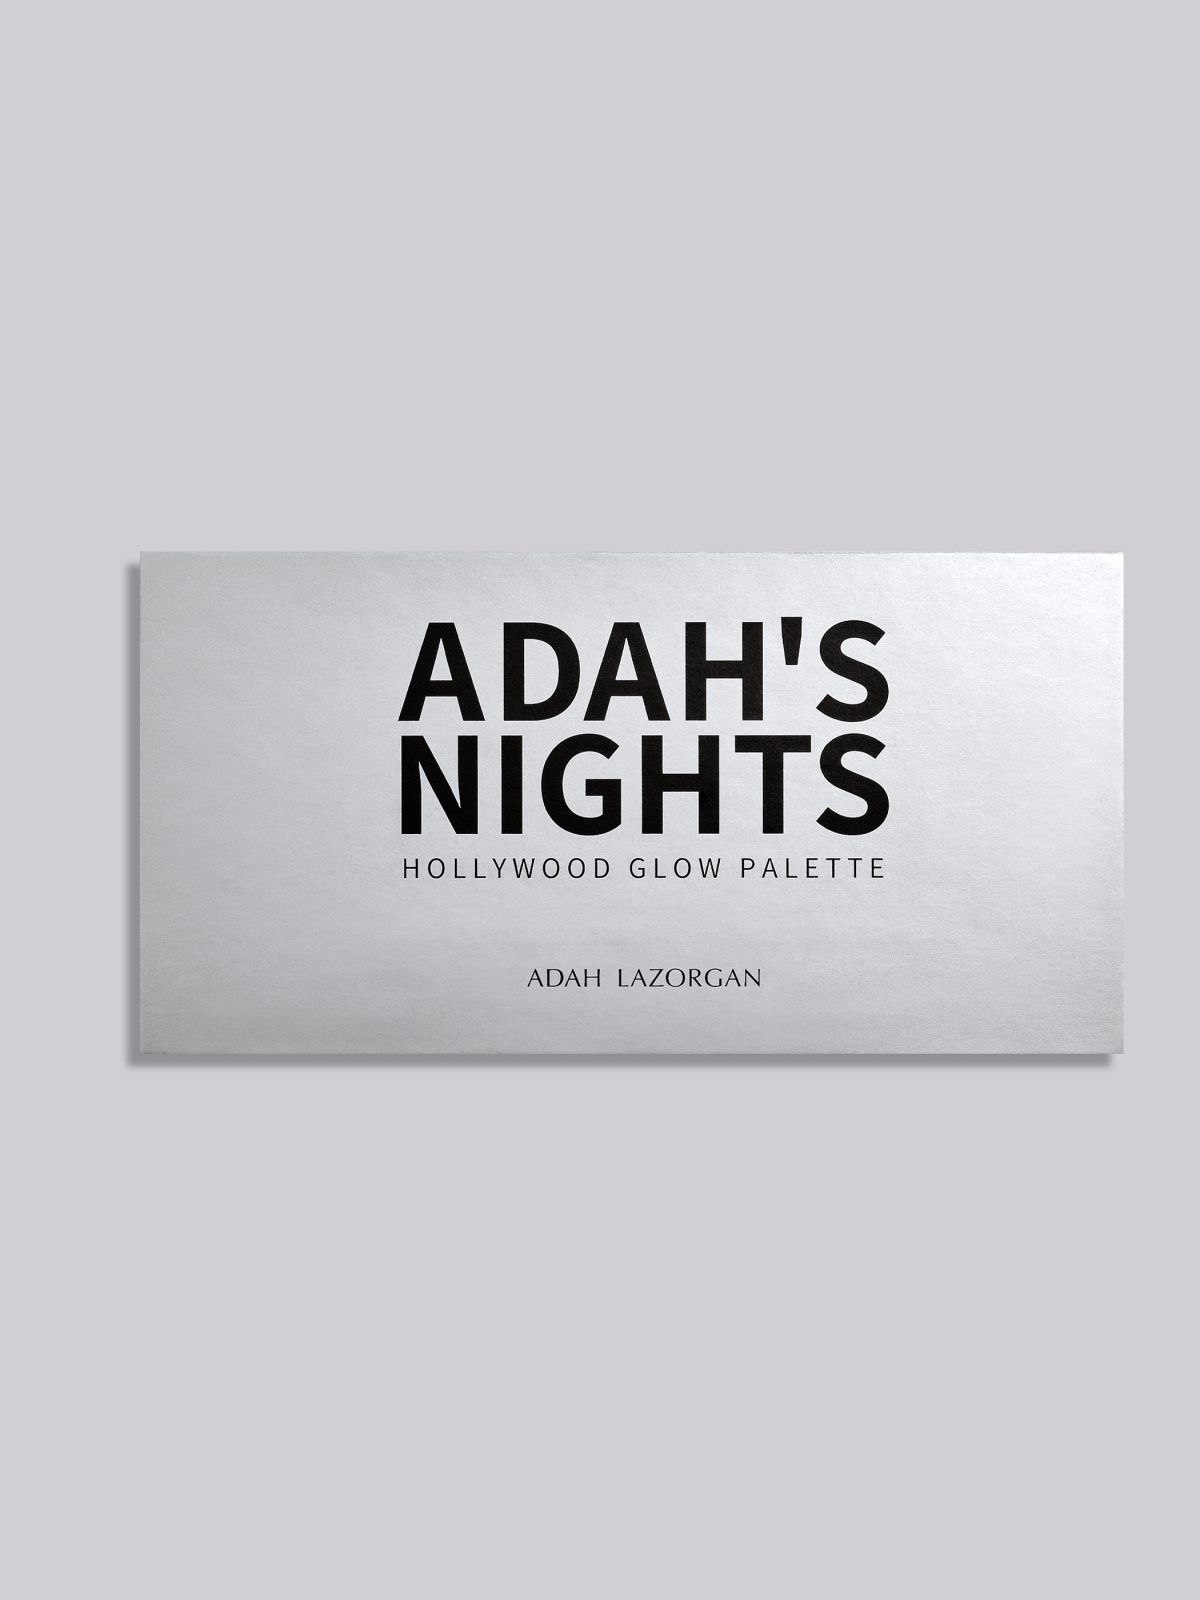  פלטת צלליות ADAH'S NIGHTS PALETE של ADAH LAZORGAN